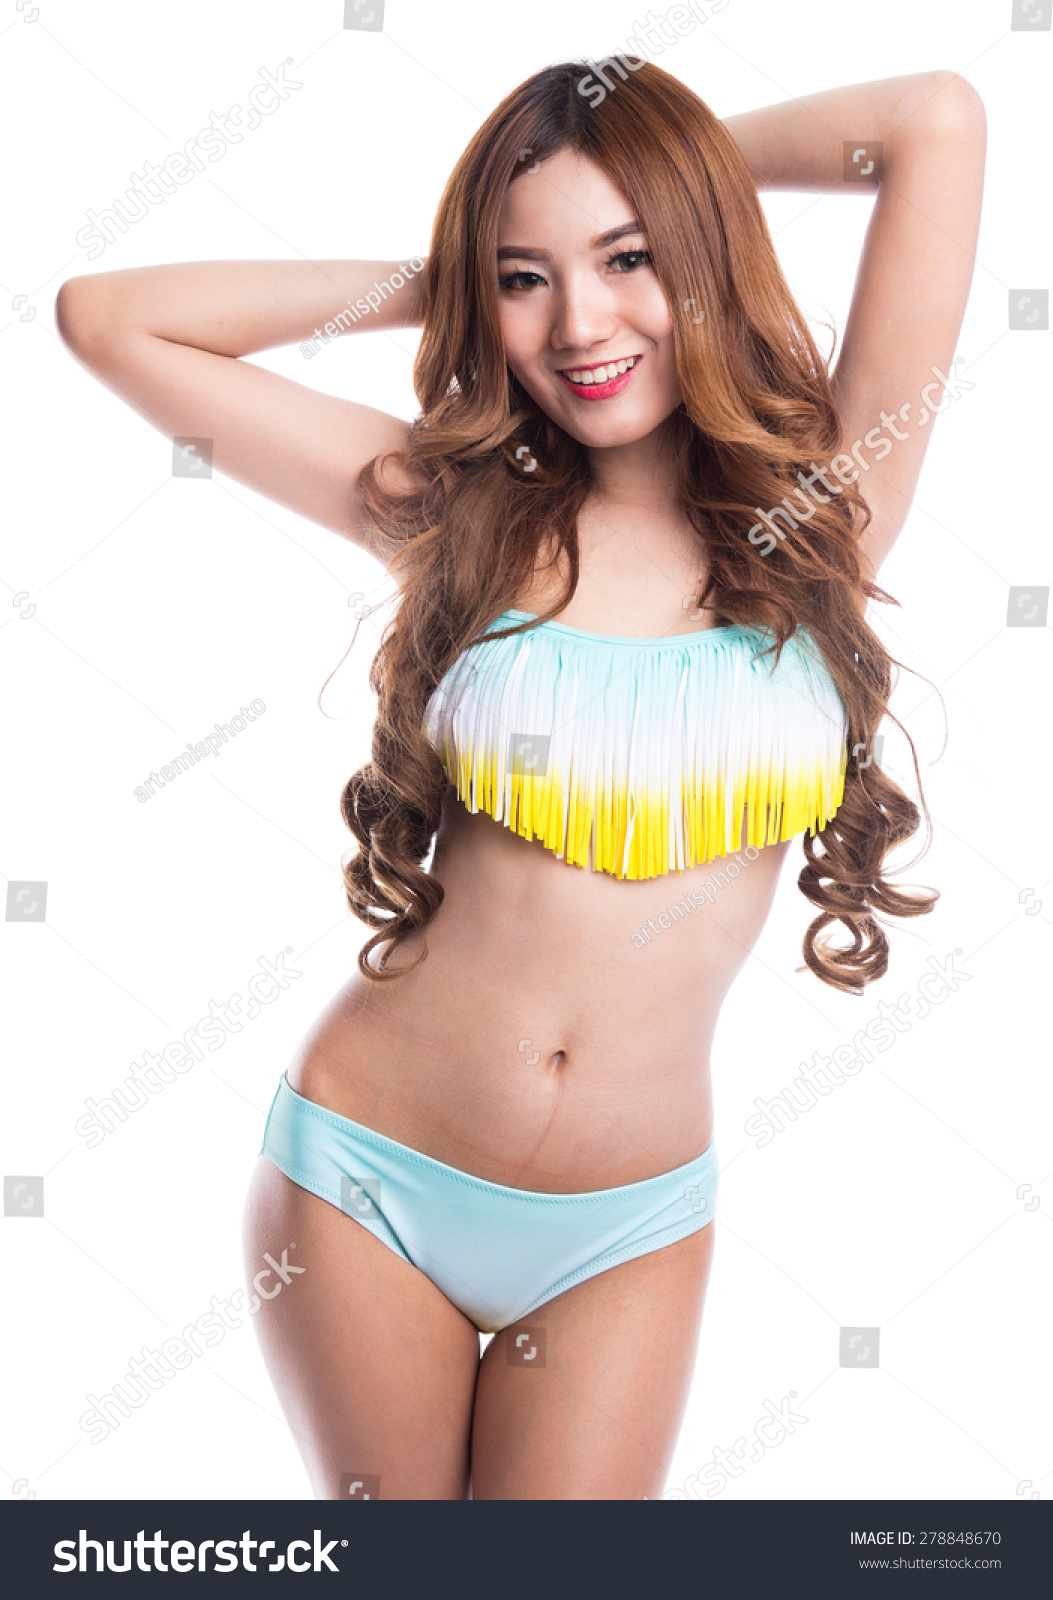 Hot Asian In Bikini